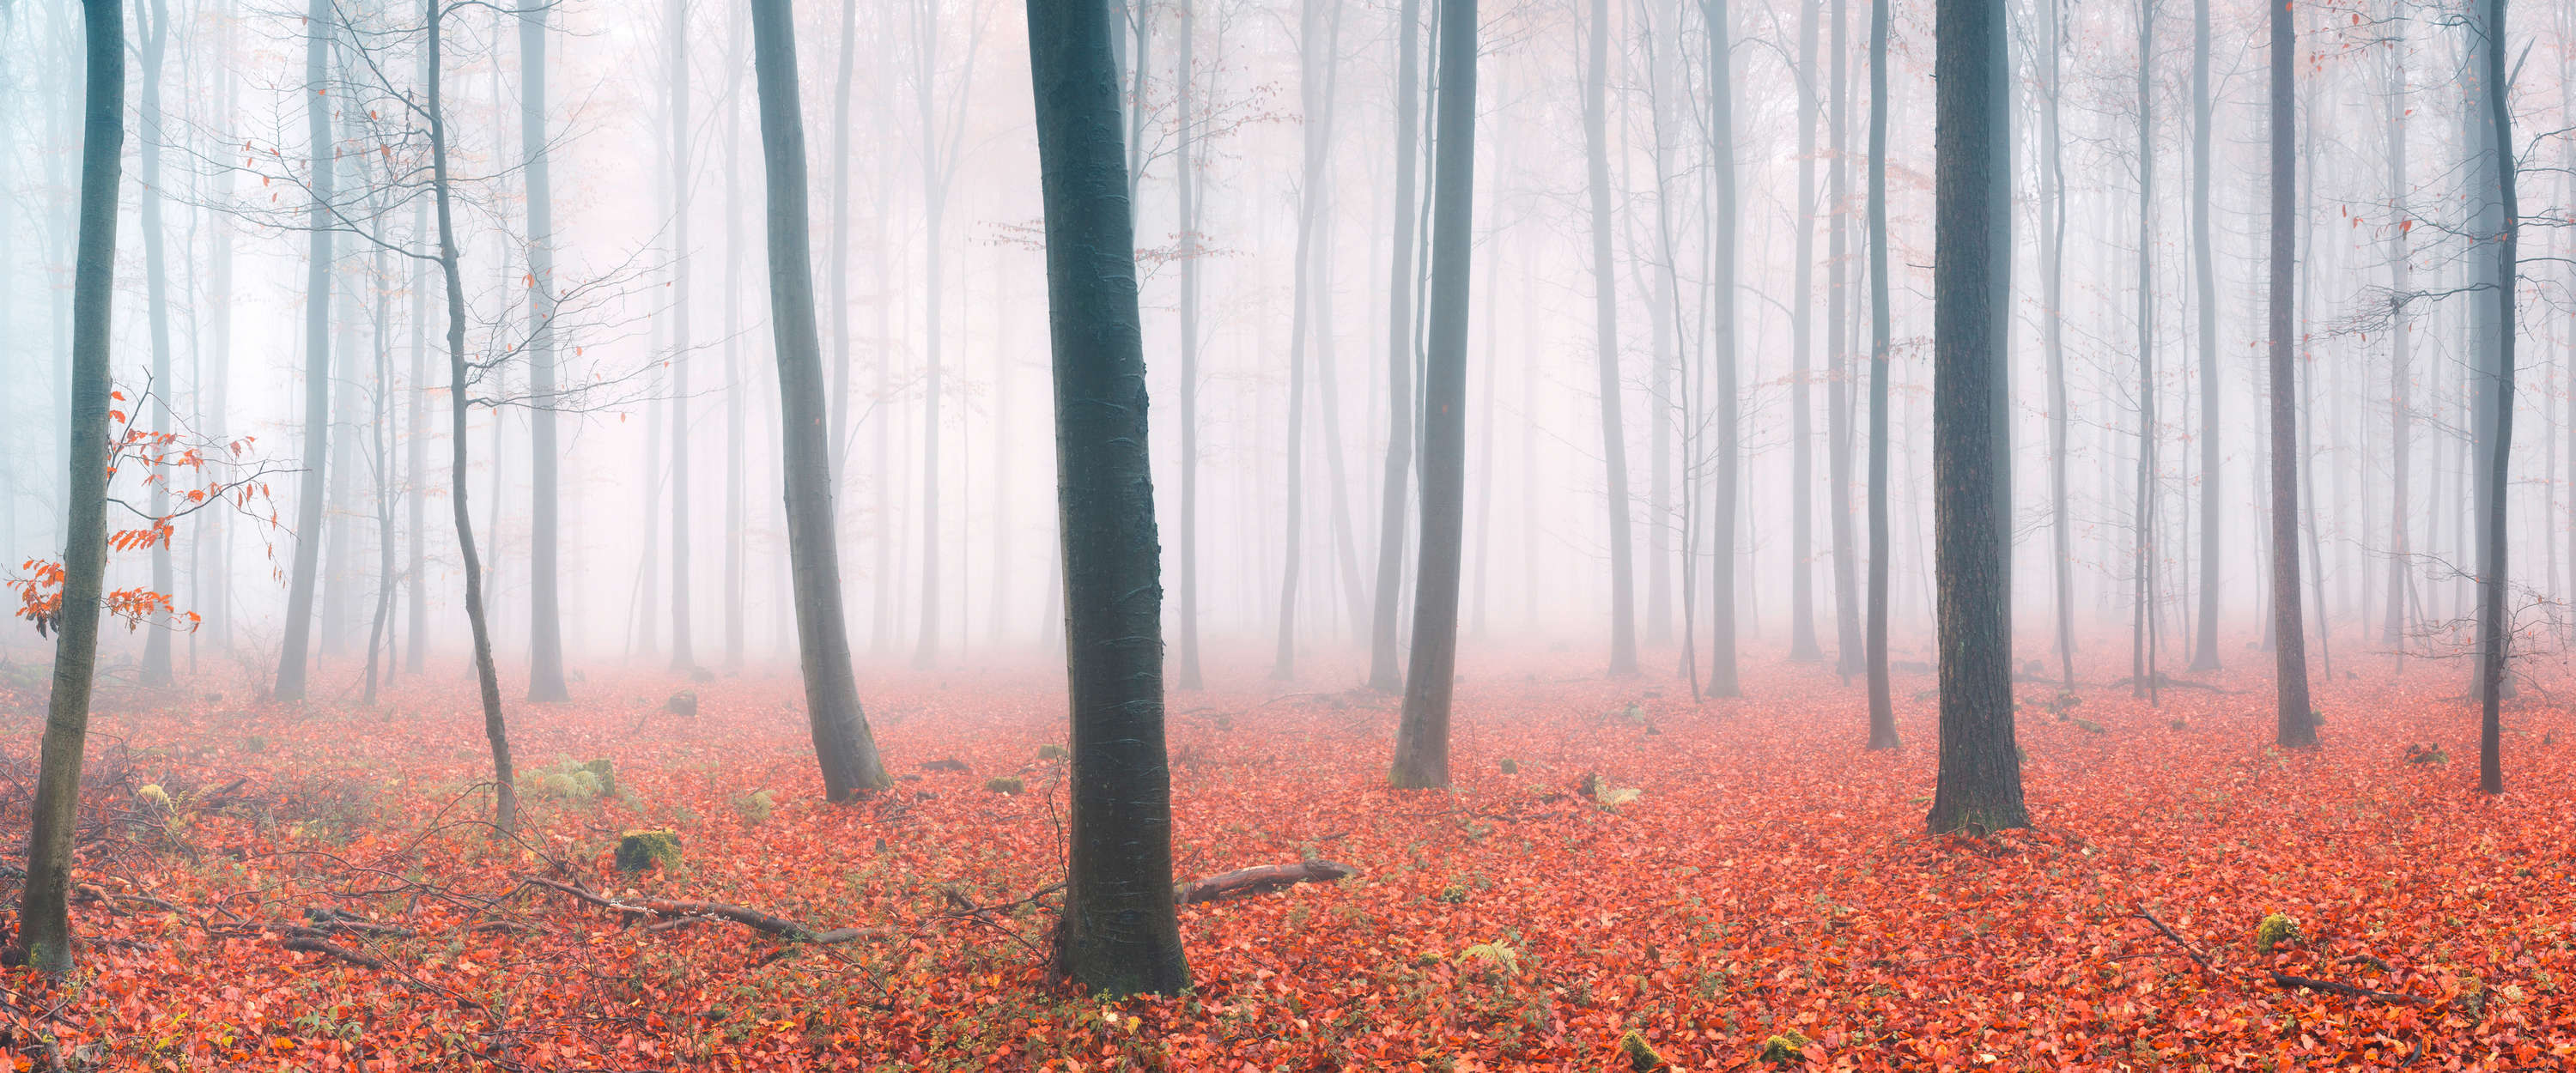             Fotomurali Foresta di nuvole con foglie rosse d'autunno
        